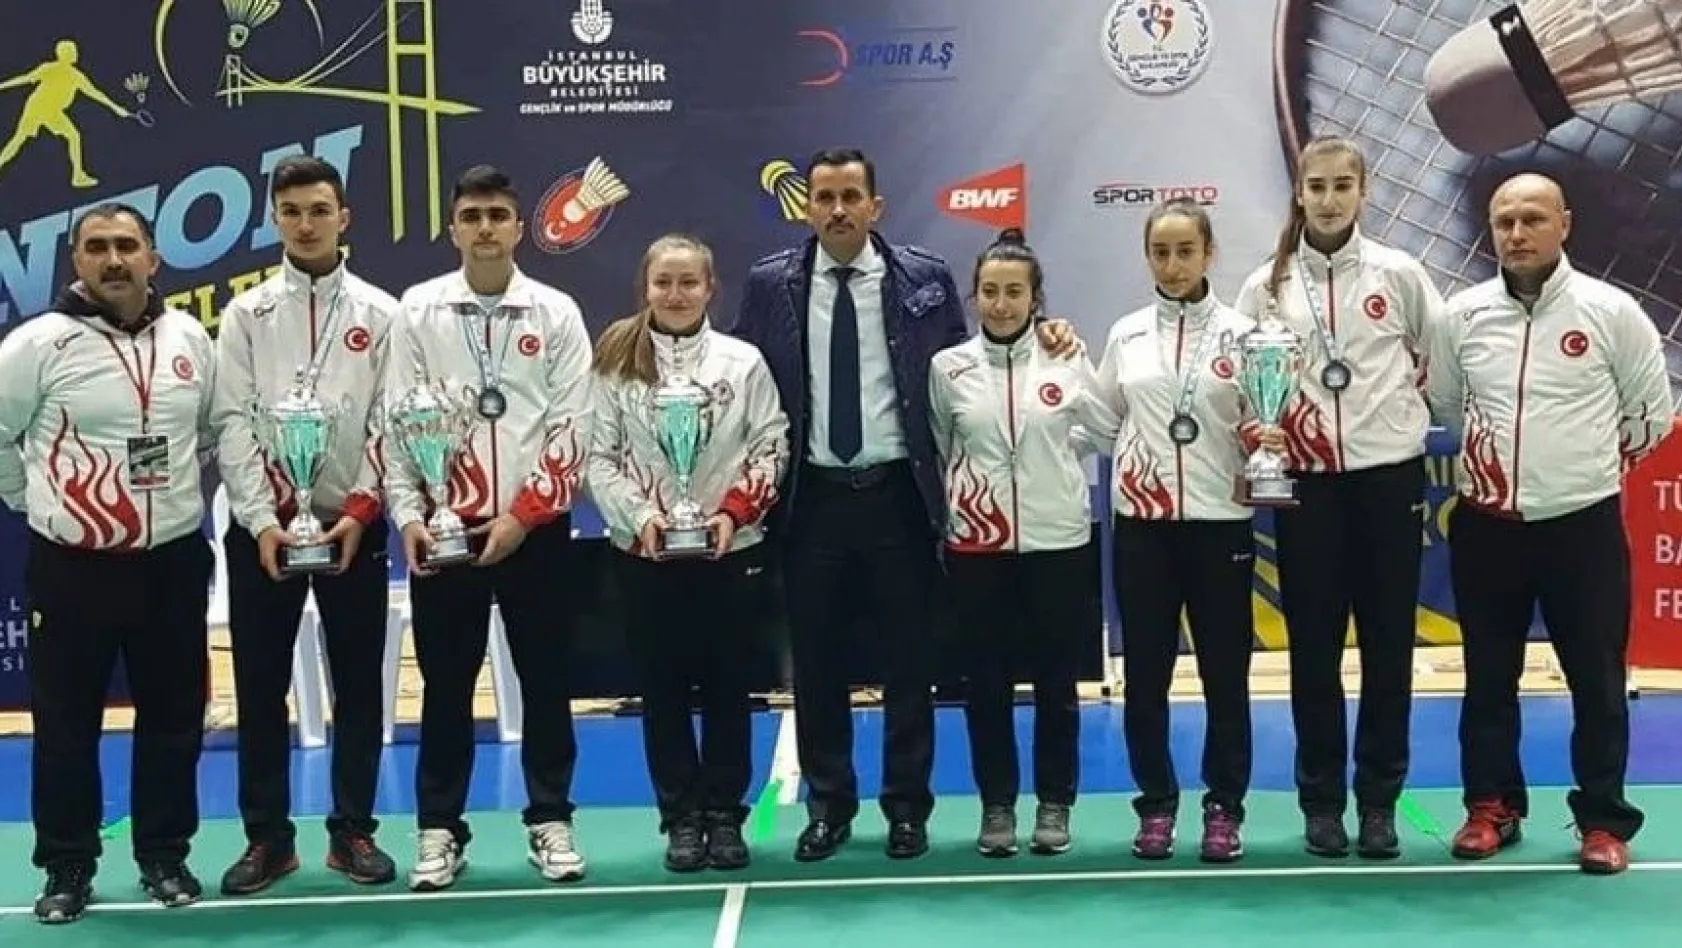 Milli badmintoncular yeni bir başarıya daha imza attılar
